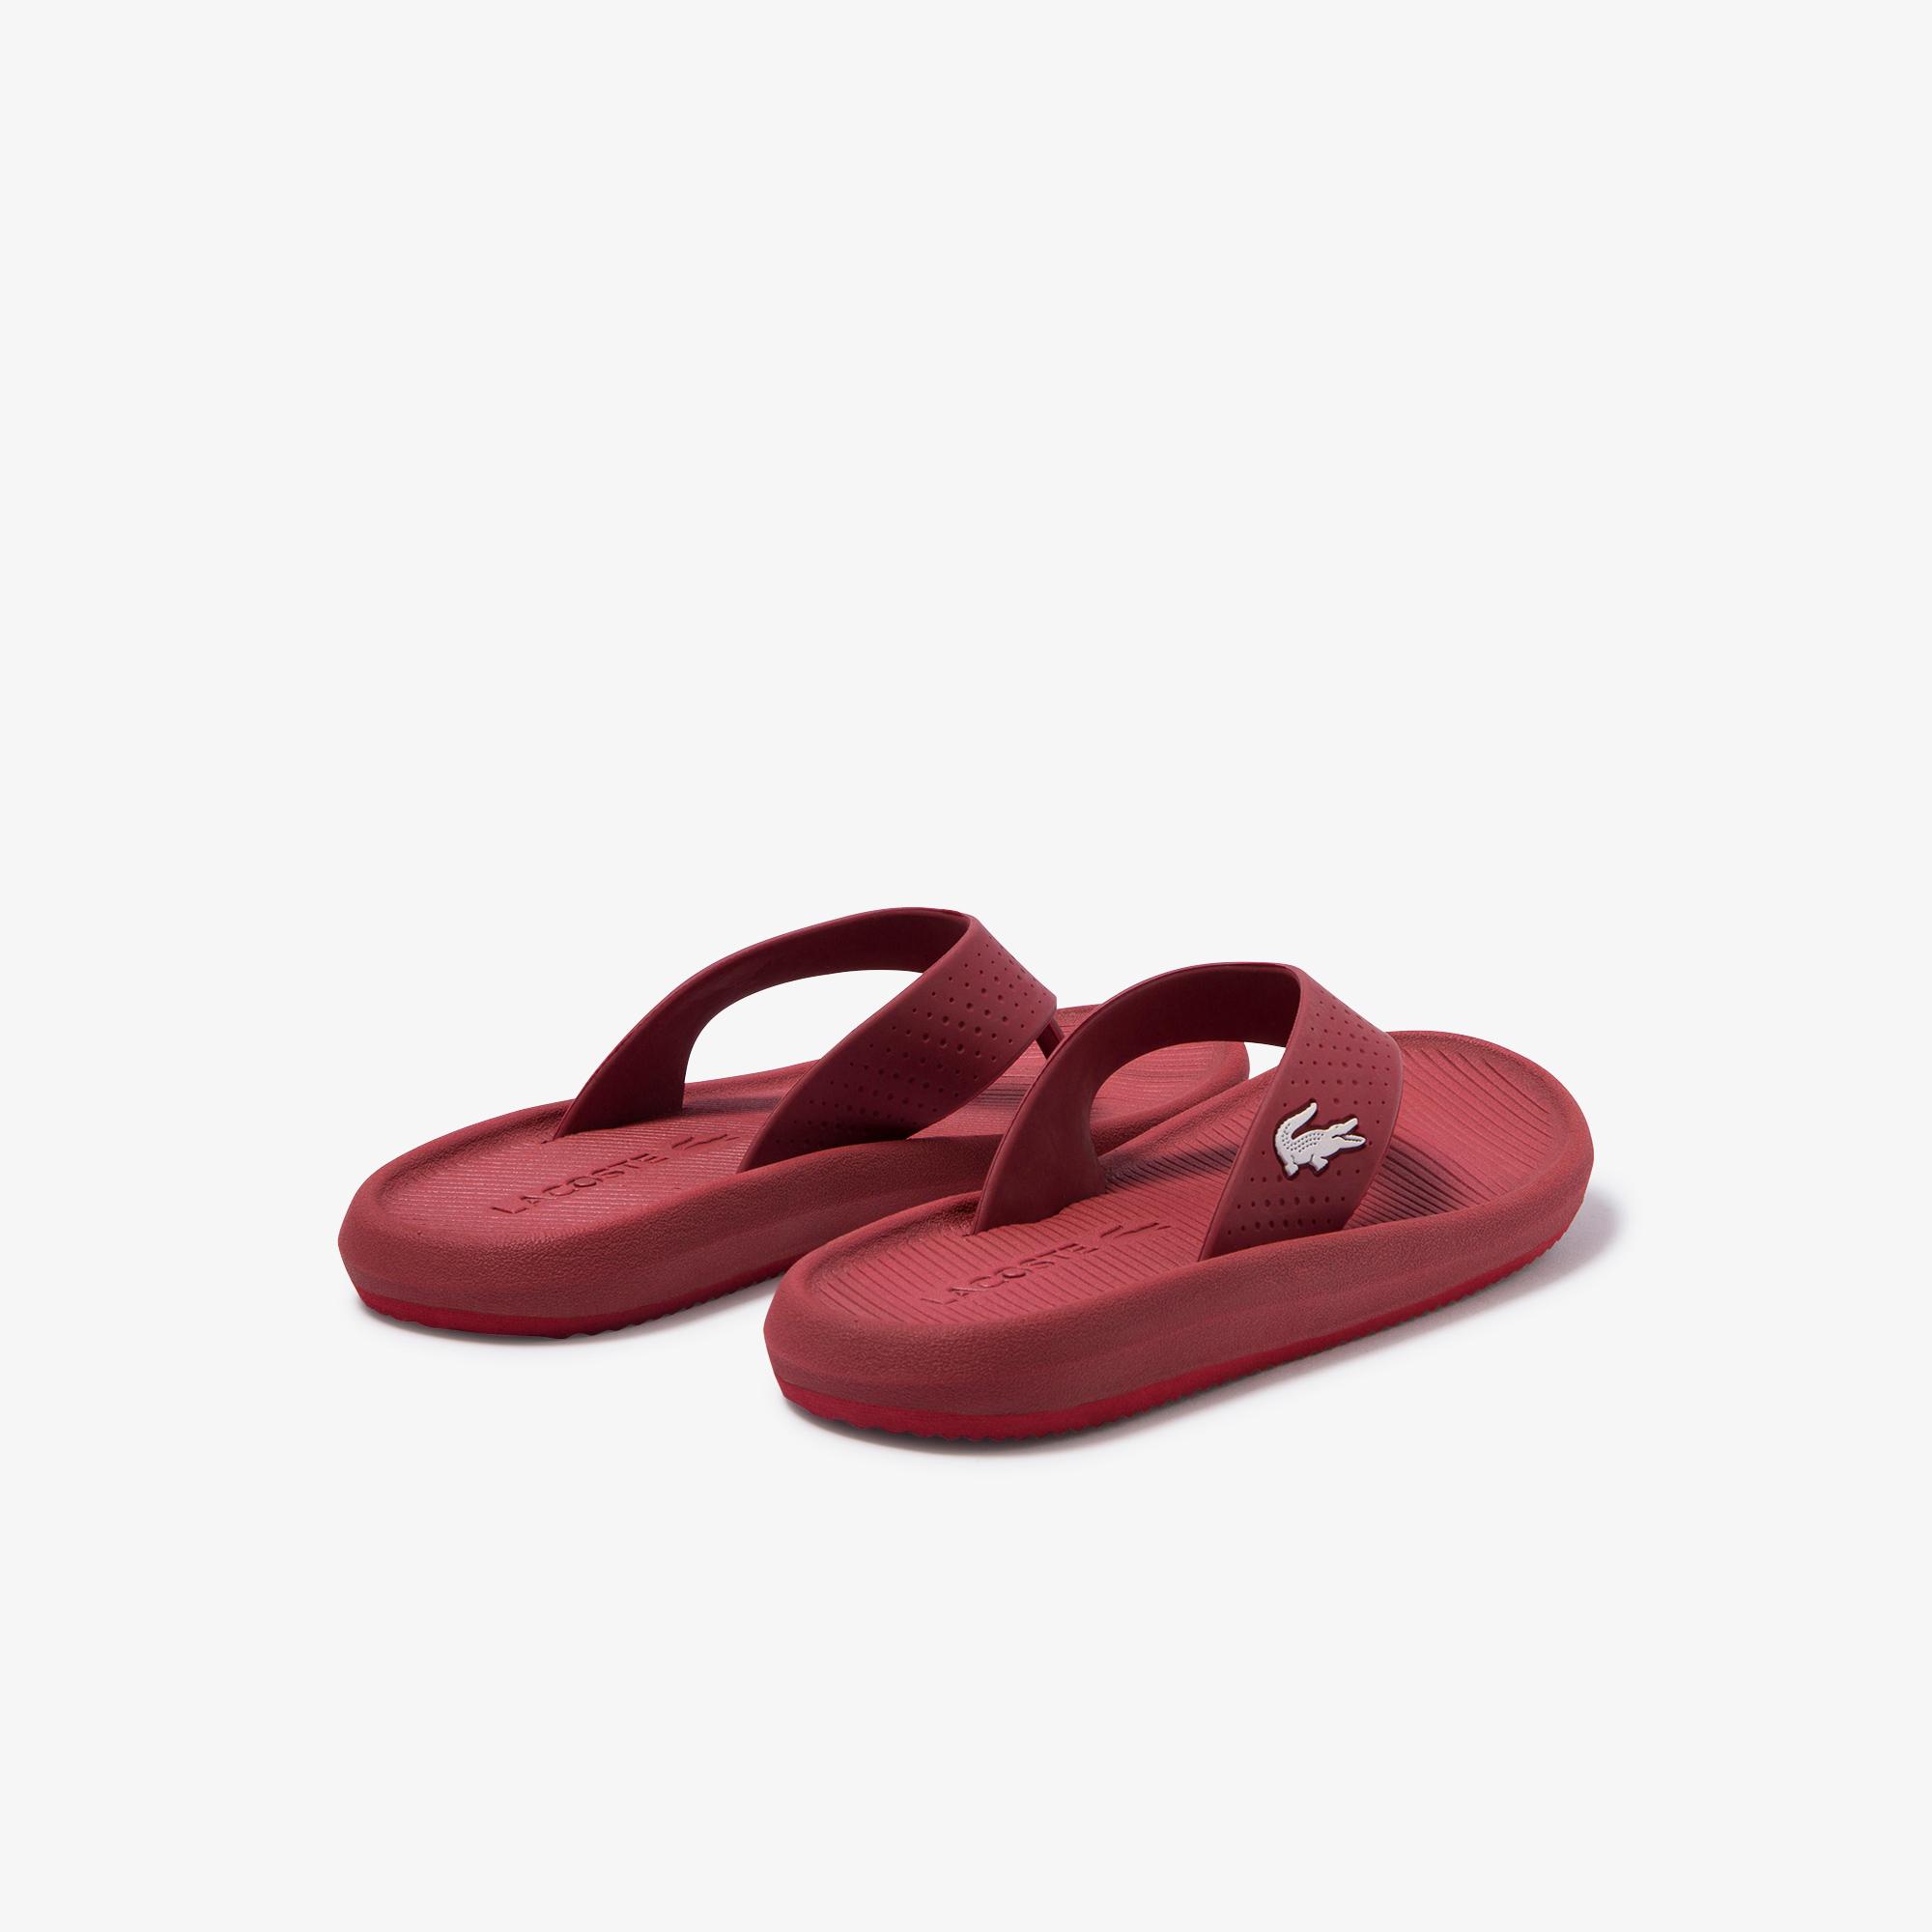 Lacoste Croco Sandal 120 1 Women's Shoes